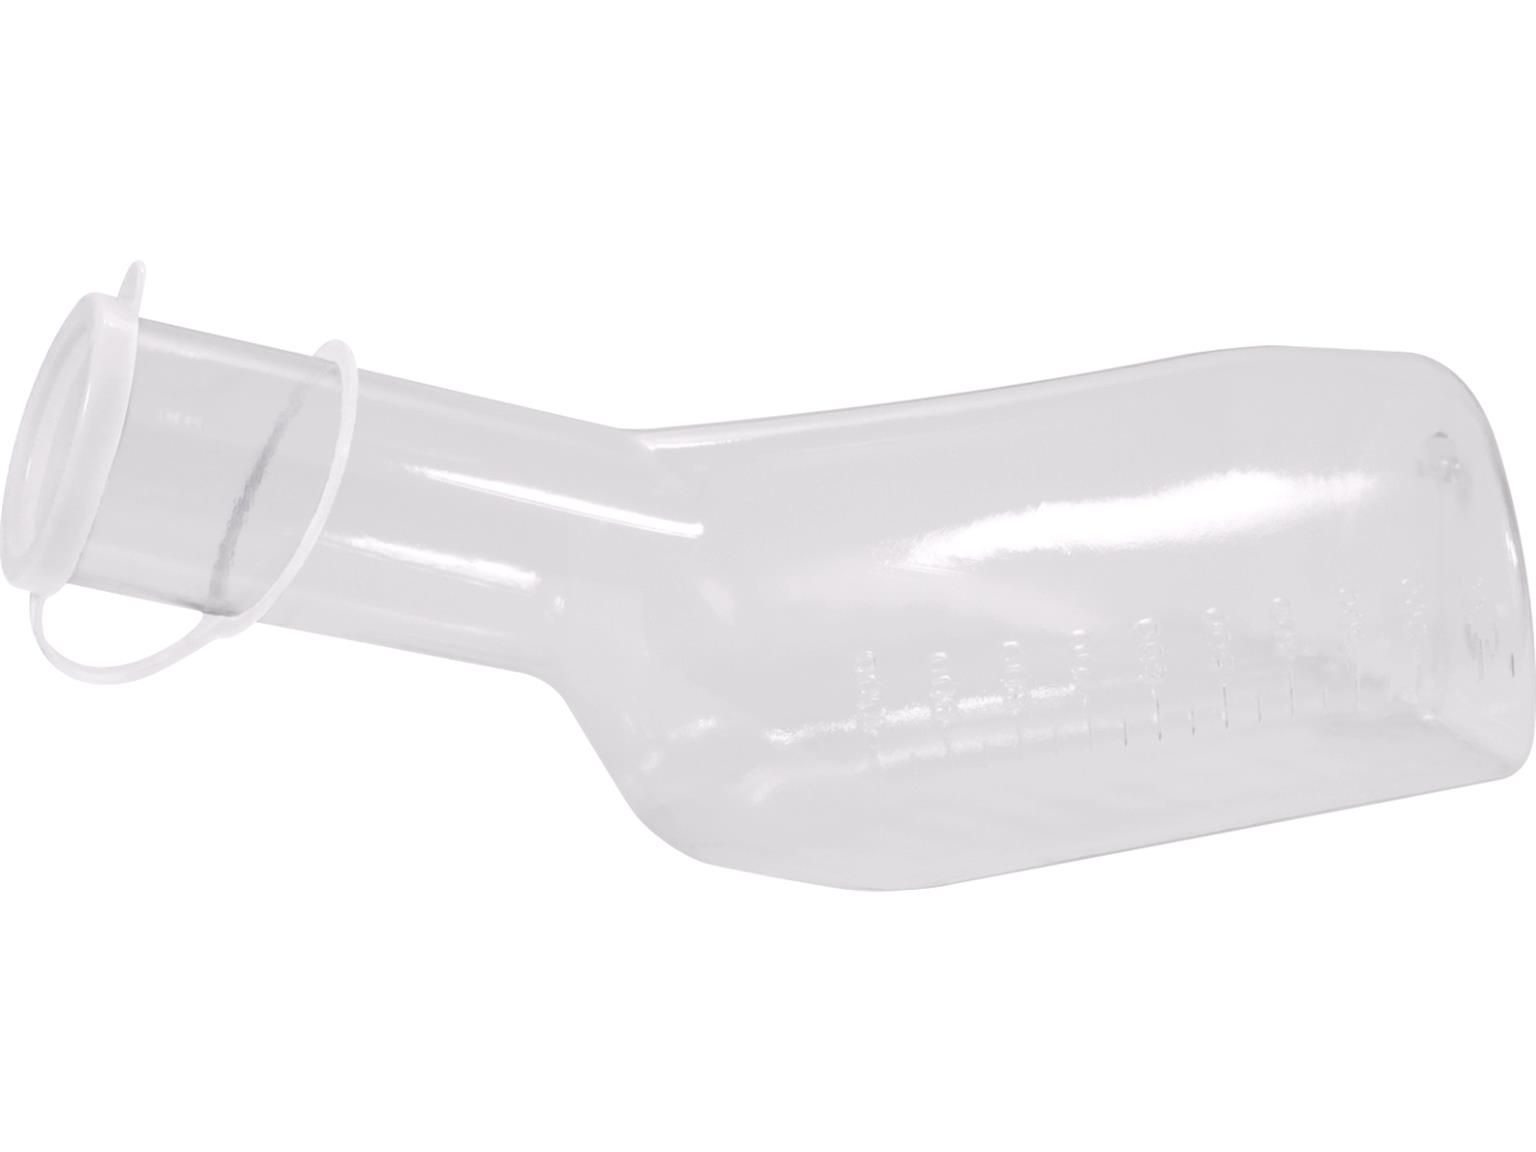 Urinflasche für Männer aus Polycarbonat, 1 Liter, eckig, glasklar,